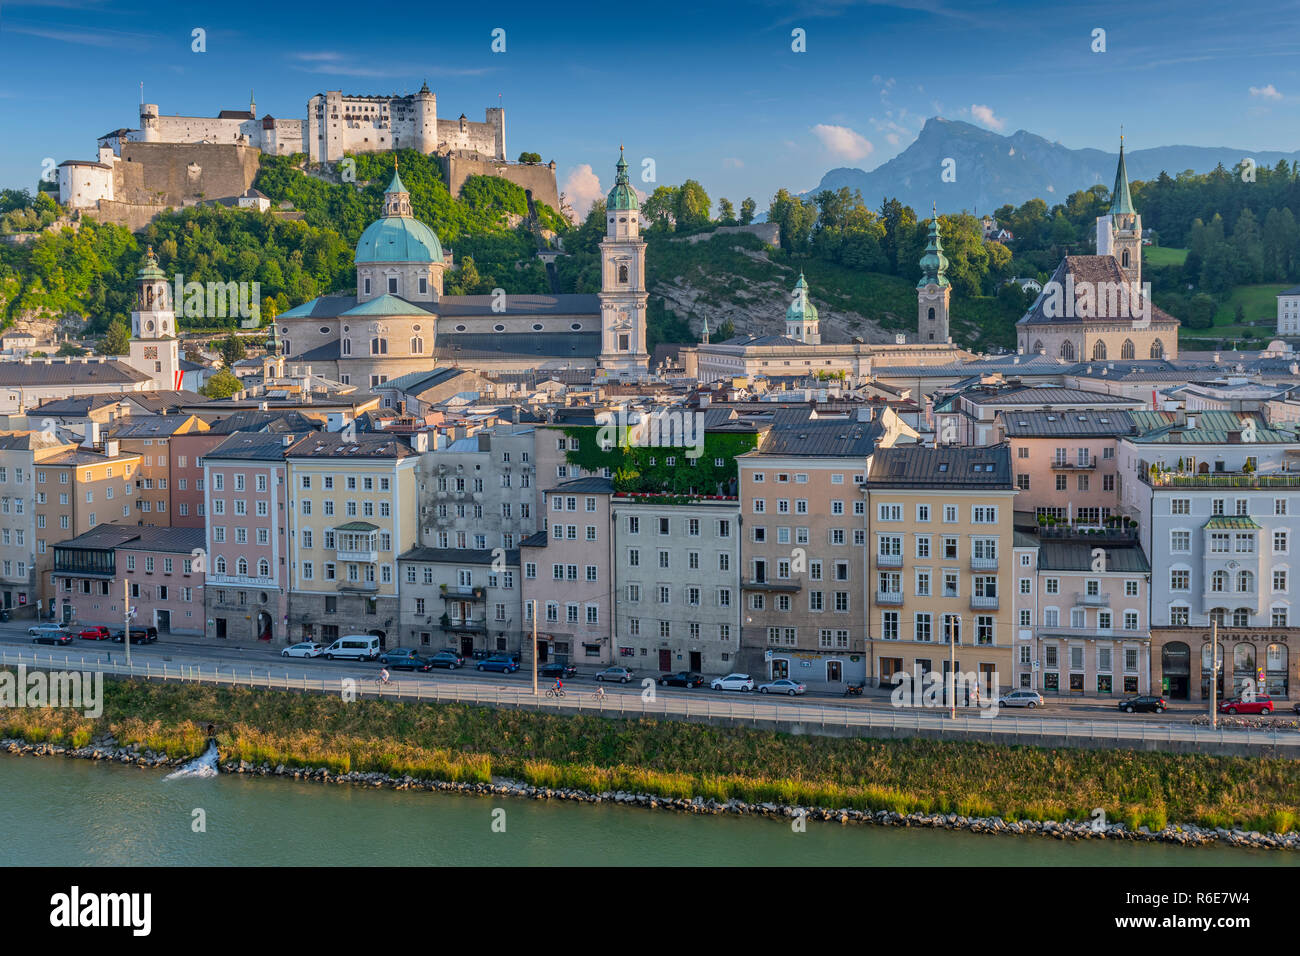 Blick vom Kapuzinerberg auf die Altstadt mit der Festung Hohensalzburg, Salzburger Dom und Stiftskirche, Salzburg Österreich Stockfoto